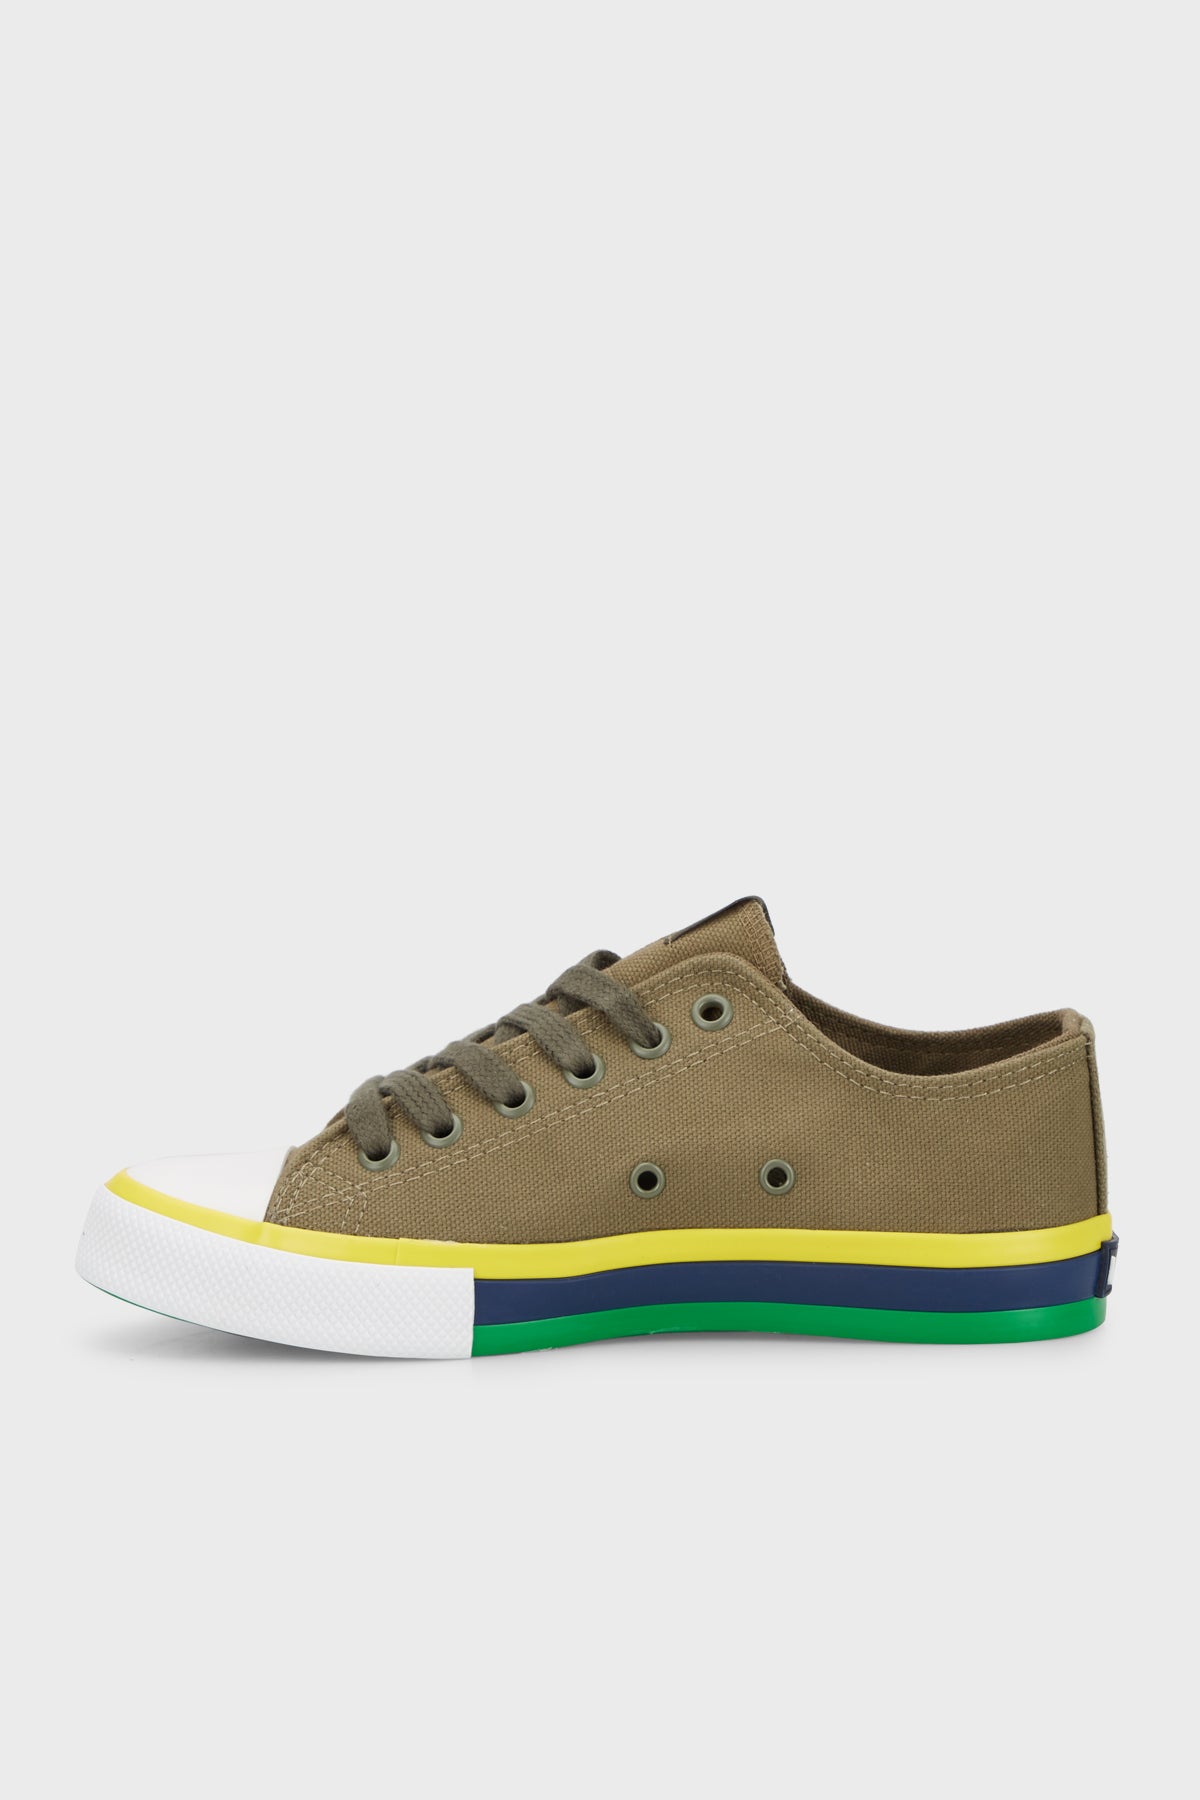 United Colors Of Benetton Sneaker Günlük Spor Erkek Ayakkabı BN-30191 HAKİ